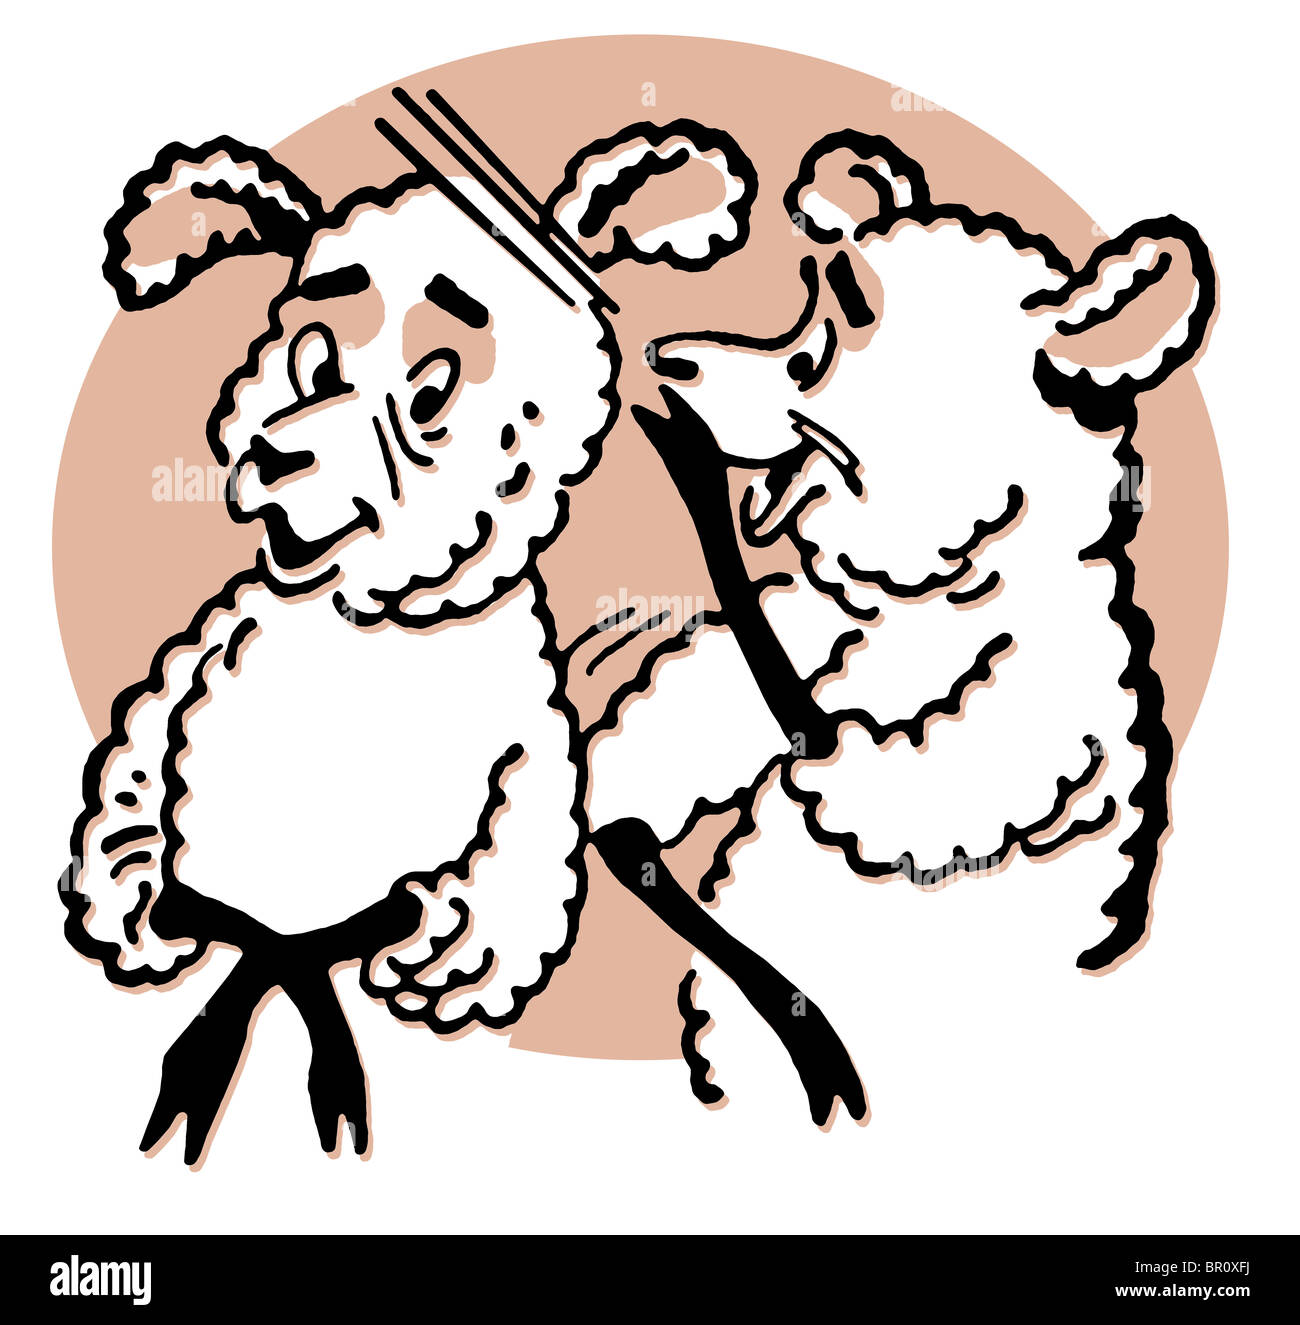 Eine Zeichnung von zwei Schafe Cartoon-Stil Stockfoto